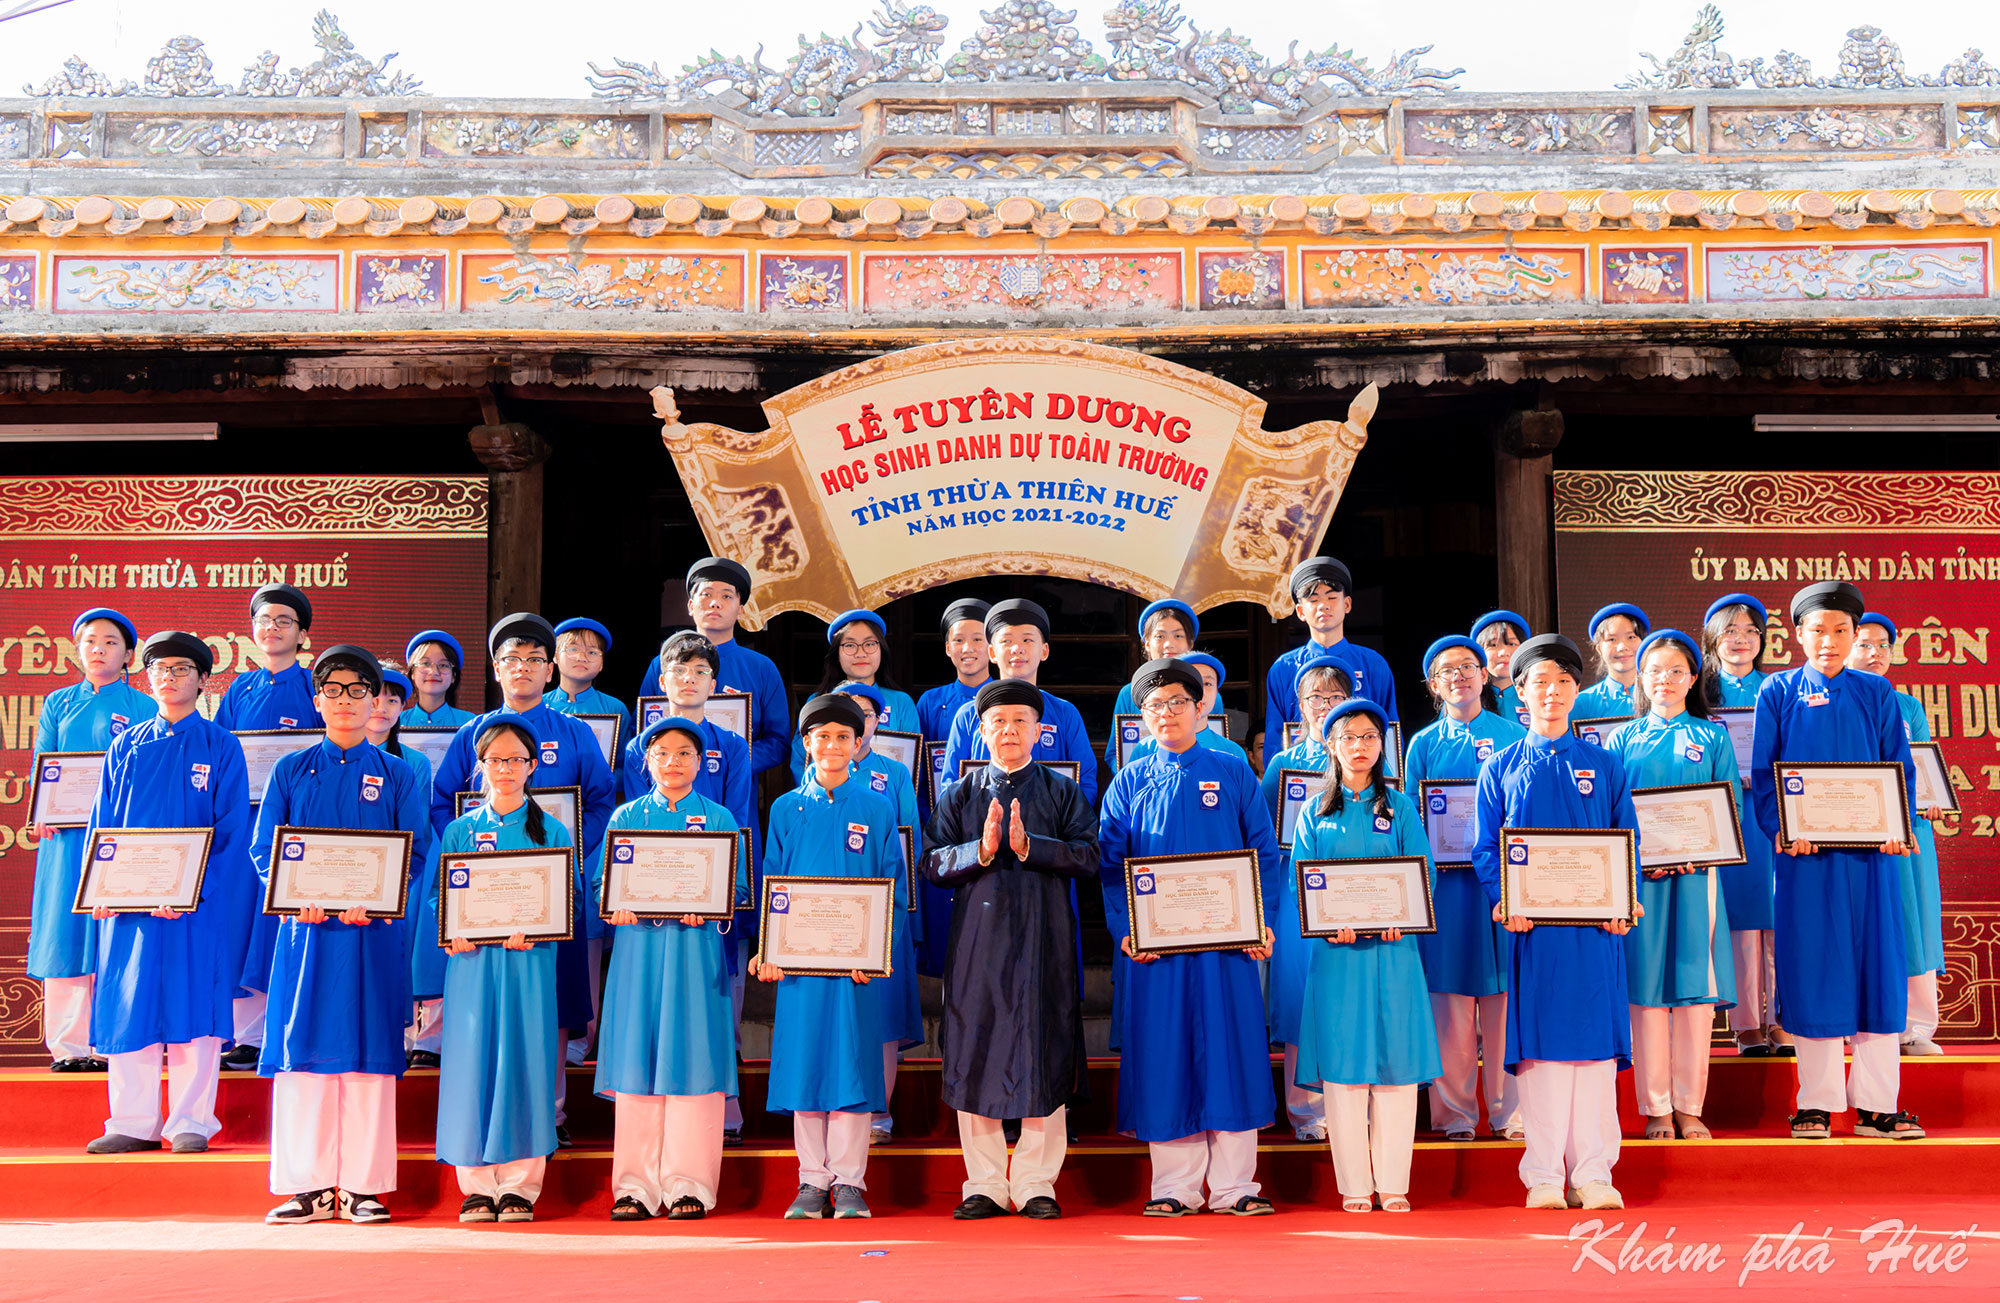 Áo dài ngũ thân được lựa chọn để mặc tại Lễ tuyên dương học sinh danh dự toàn trường tỉnh Thừa Thiên Huế, tổ chức trọng thể tại Quốc Tử Giám - Huế